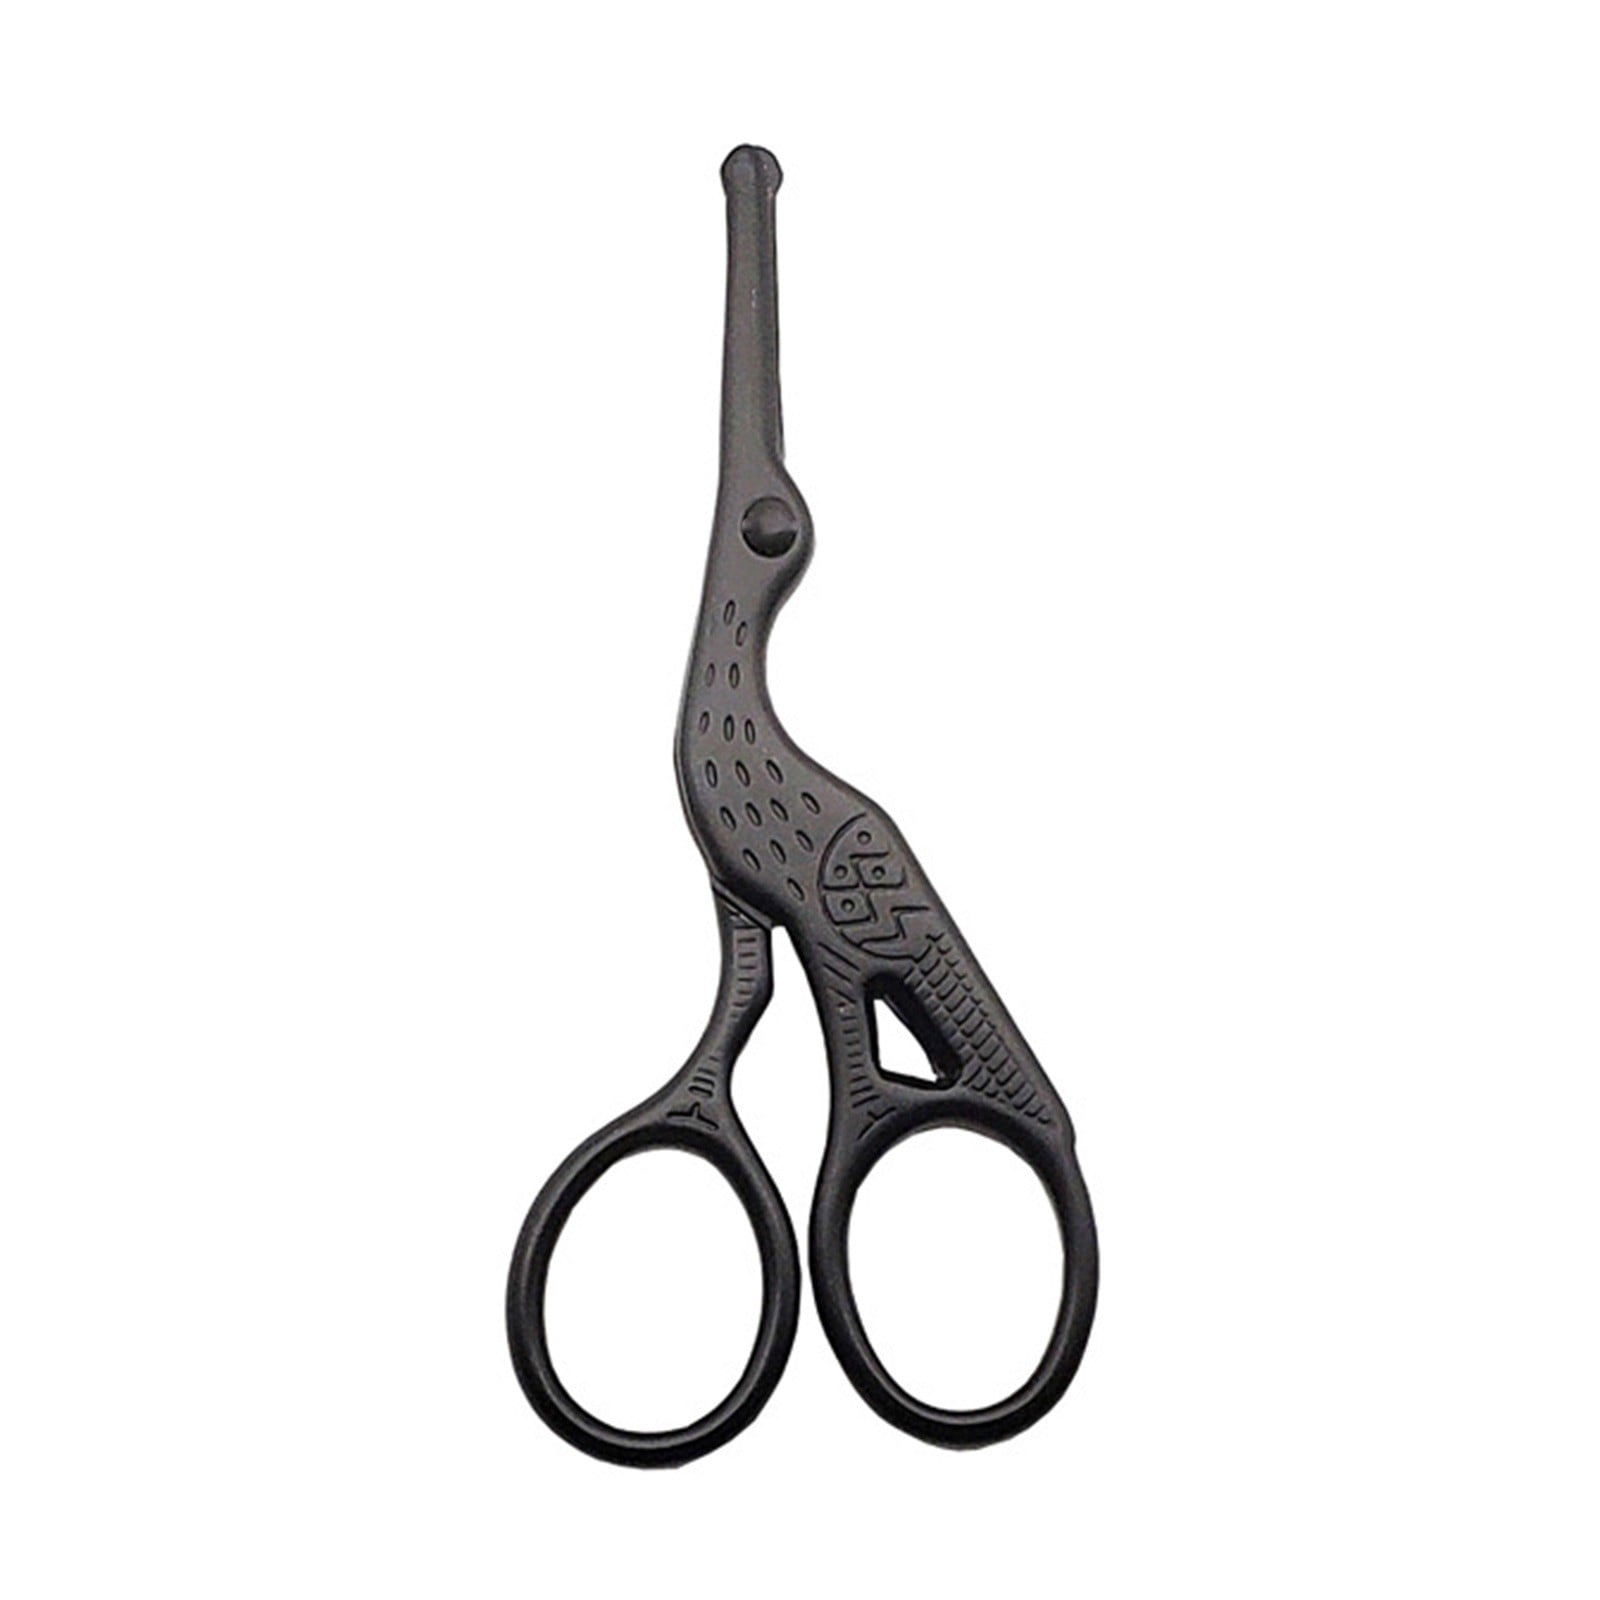 Goody Hair Cutting Shears, Precision Blades 6.5 1CT